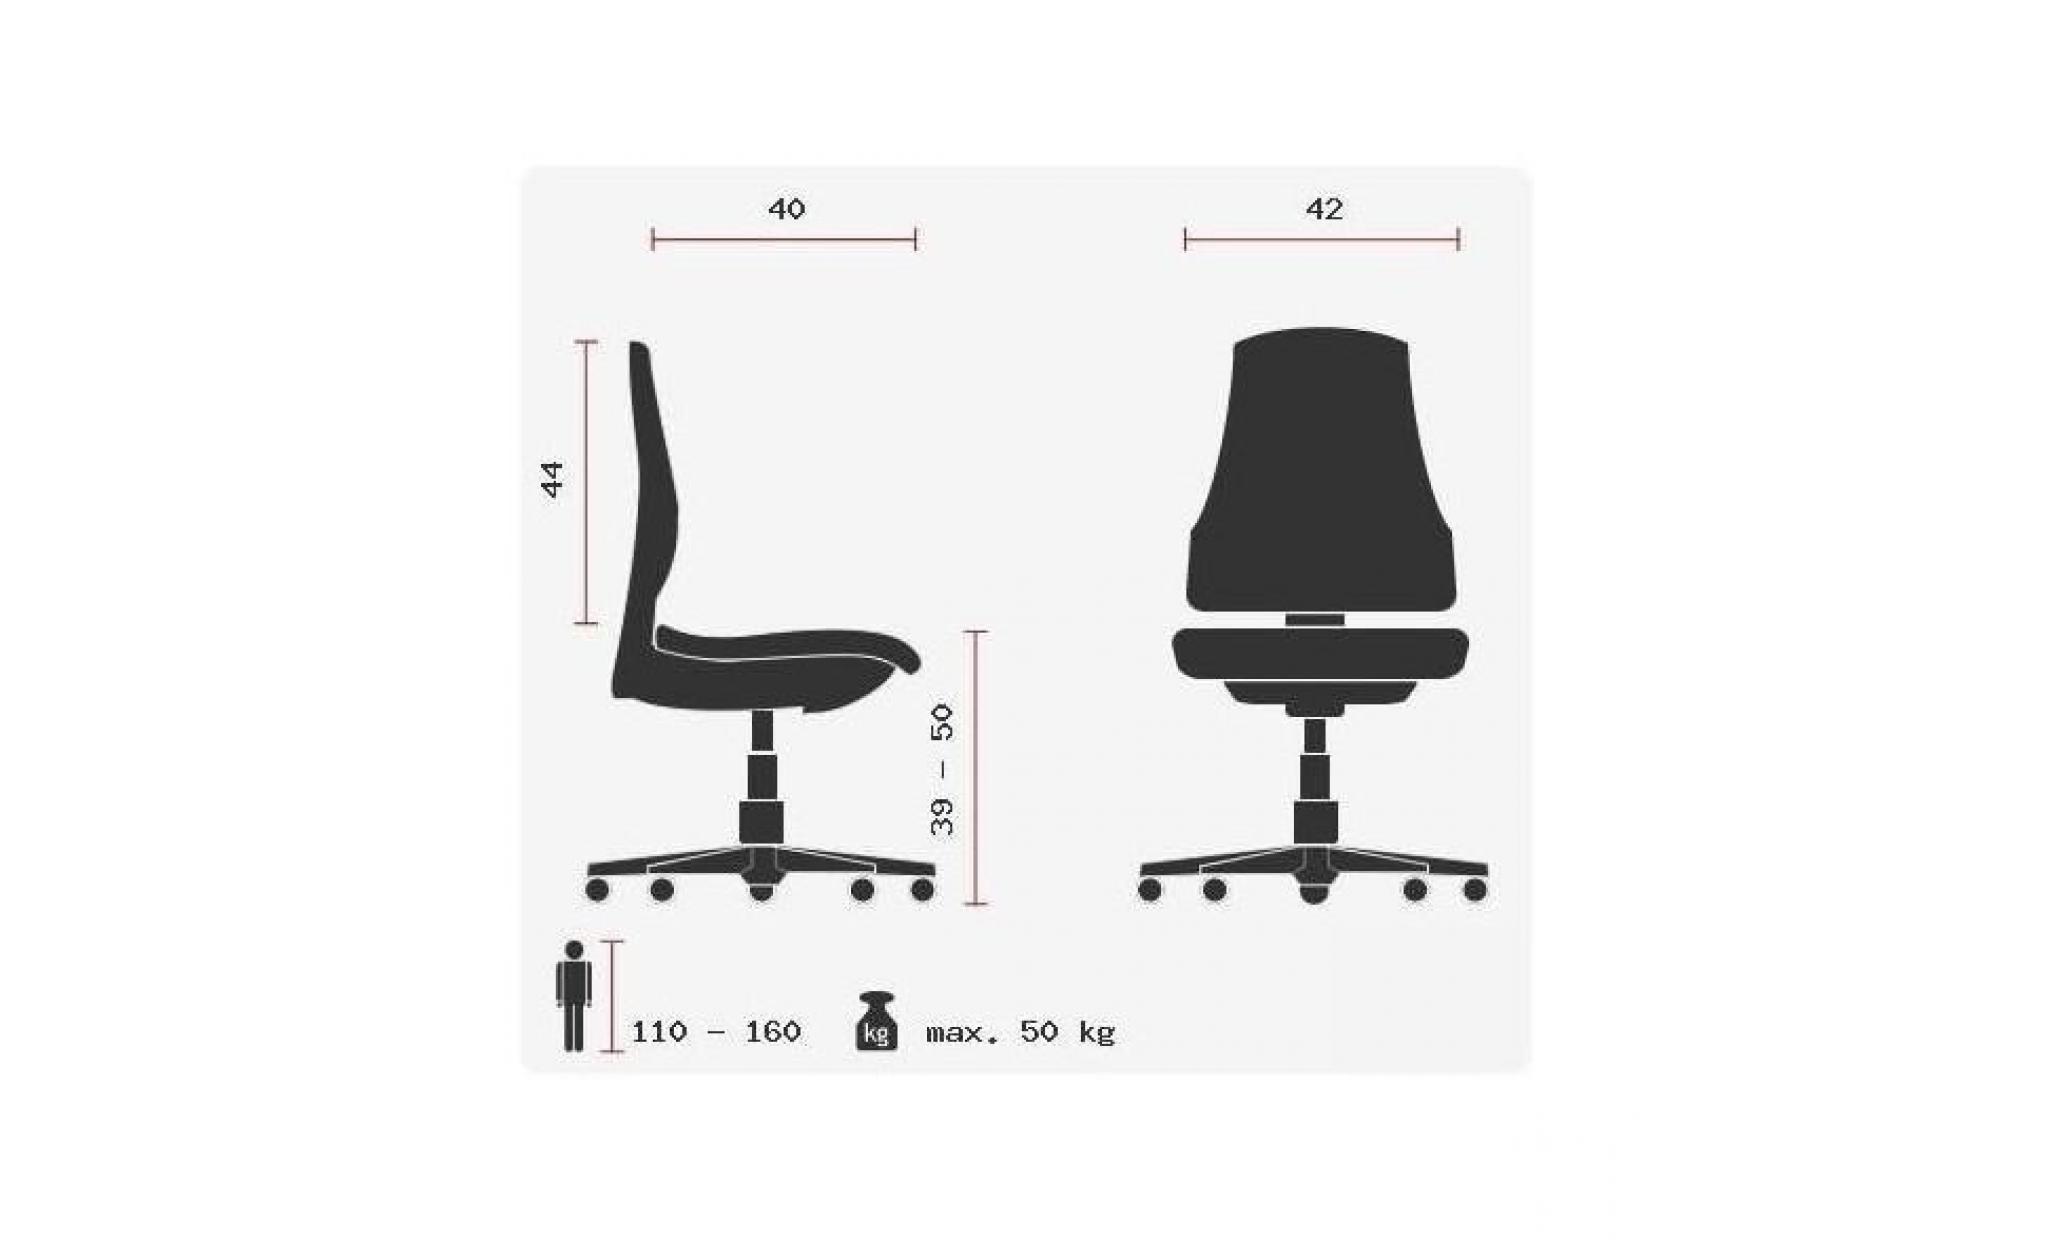 dossier ergonomique +++ assise réglable en hauteur +++ tissu en maille 3d, résistant et anti tâches pas cher